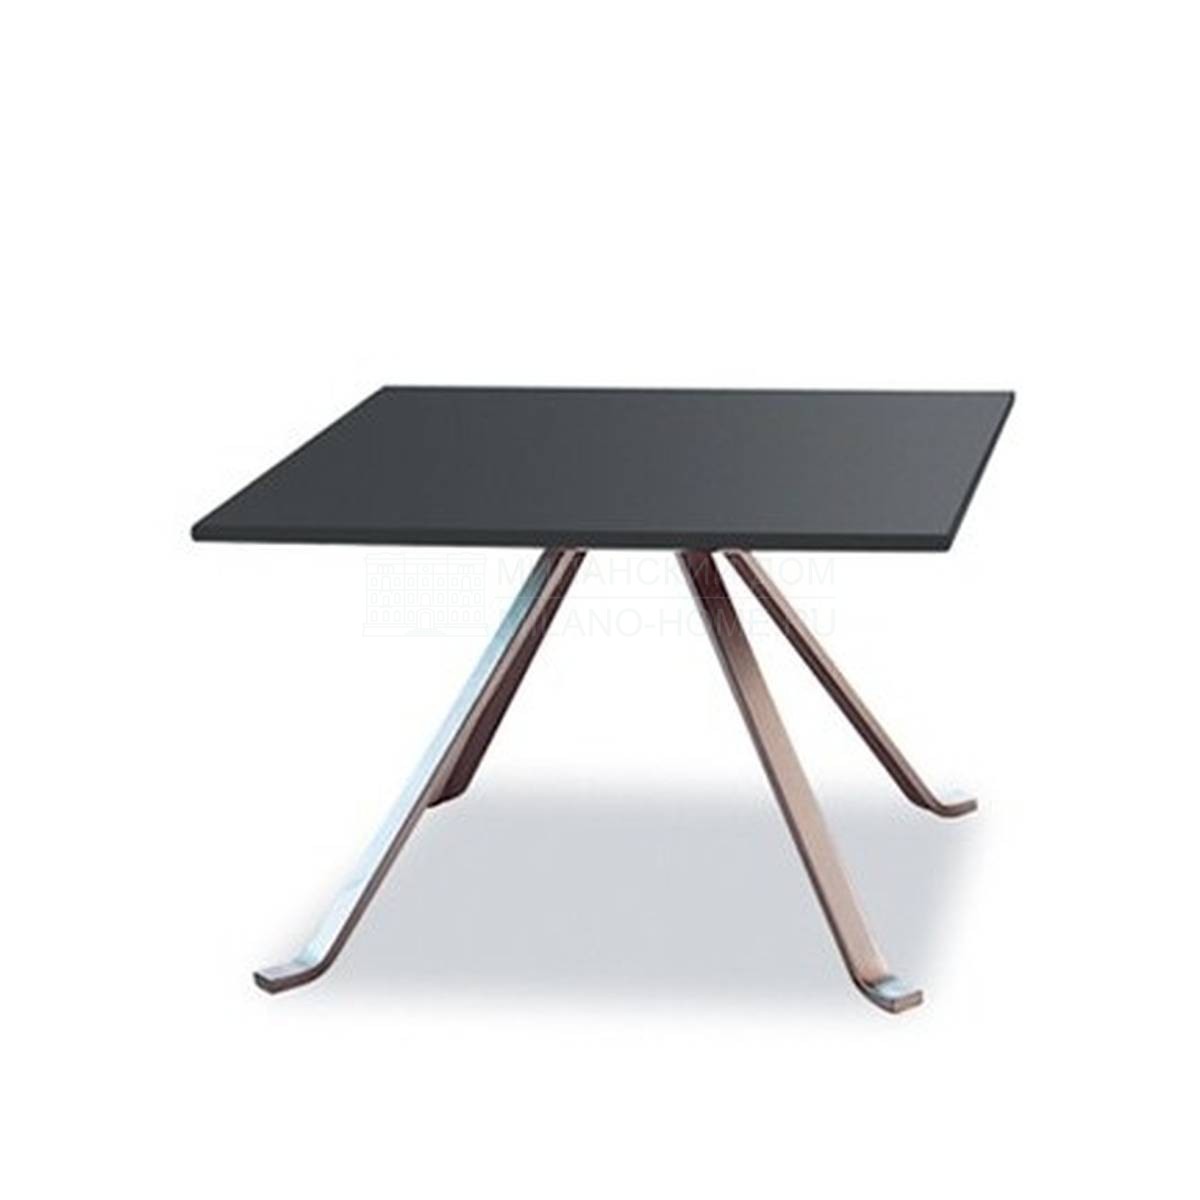 Кофейный столик Wave side table  из Италия фабрики TONON